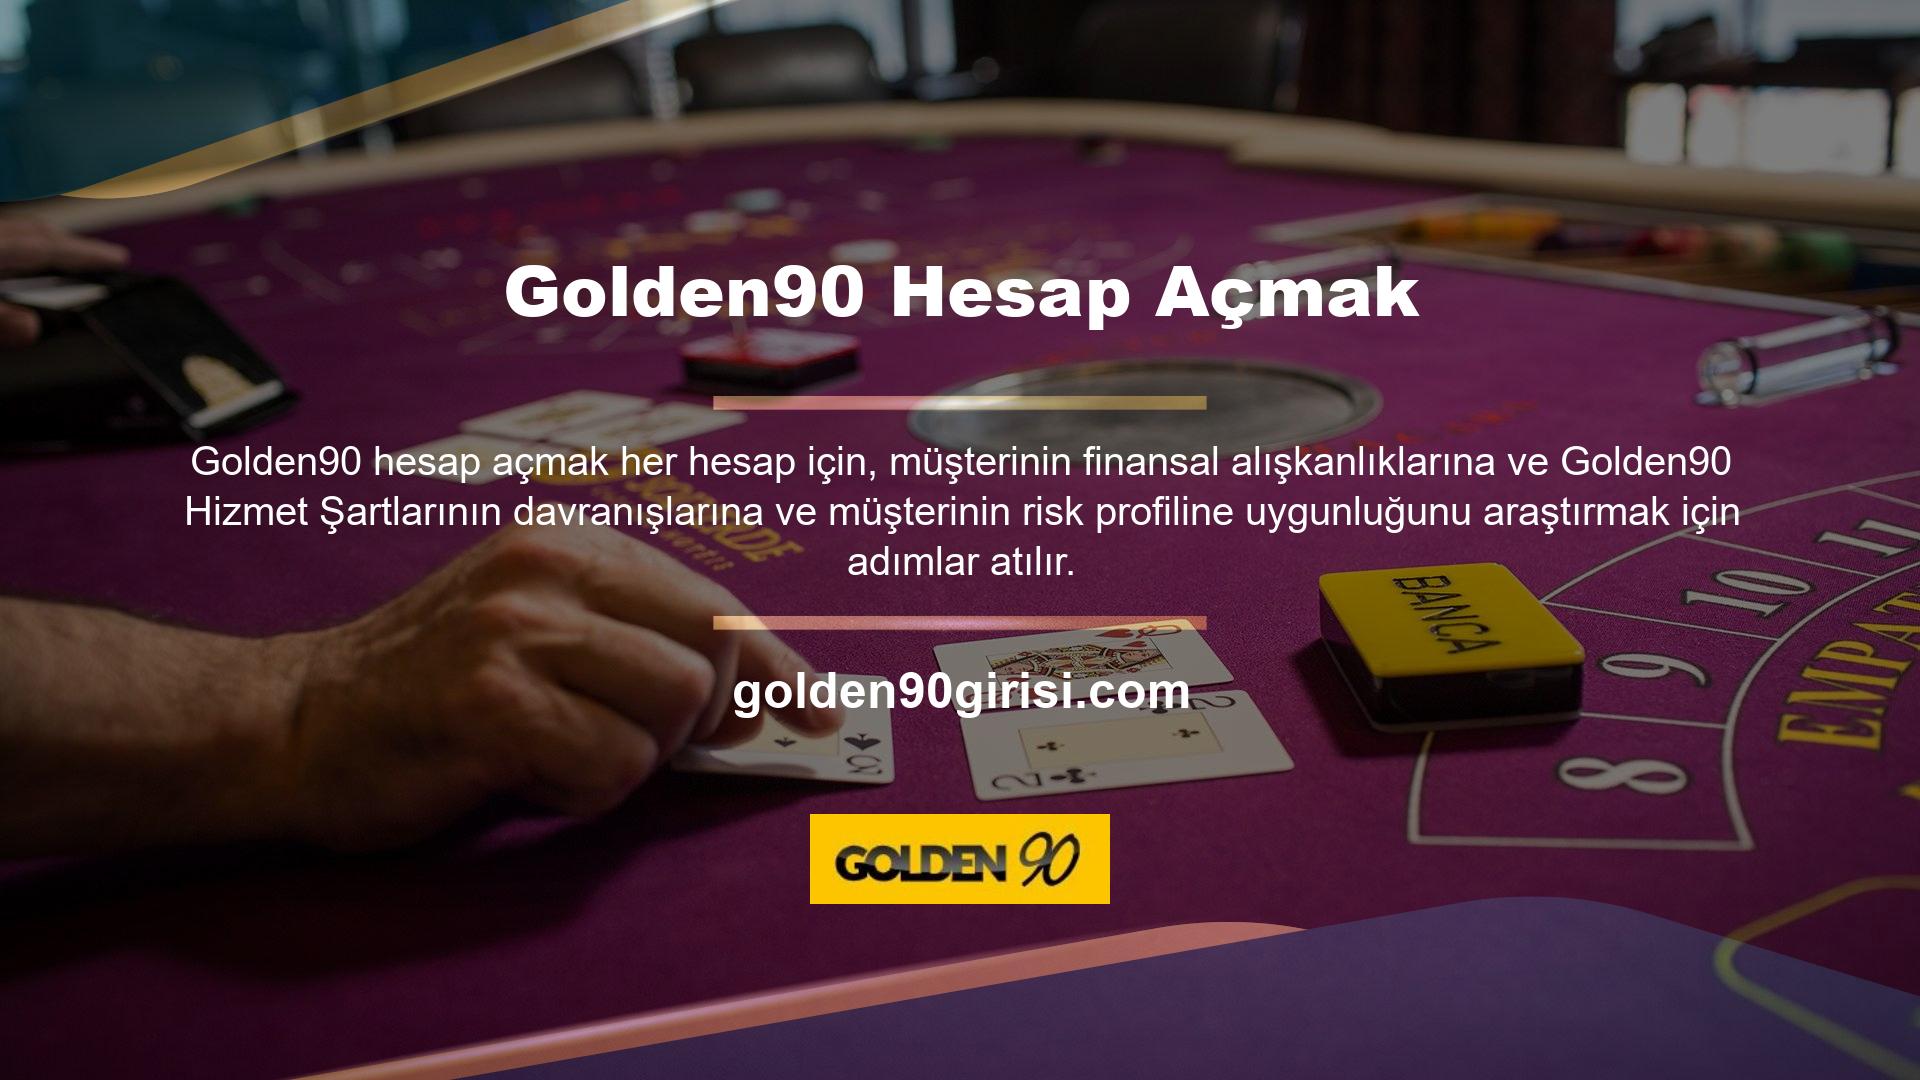 Tüm kullanıcılar Golden90 hizmetlerini yalnızca eğlence amaçlı kullanabilir